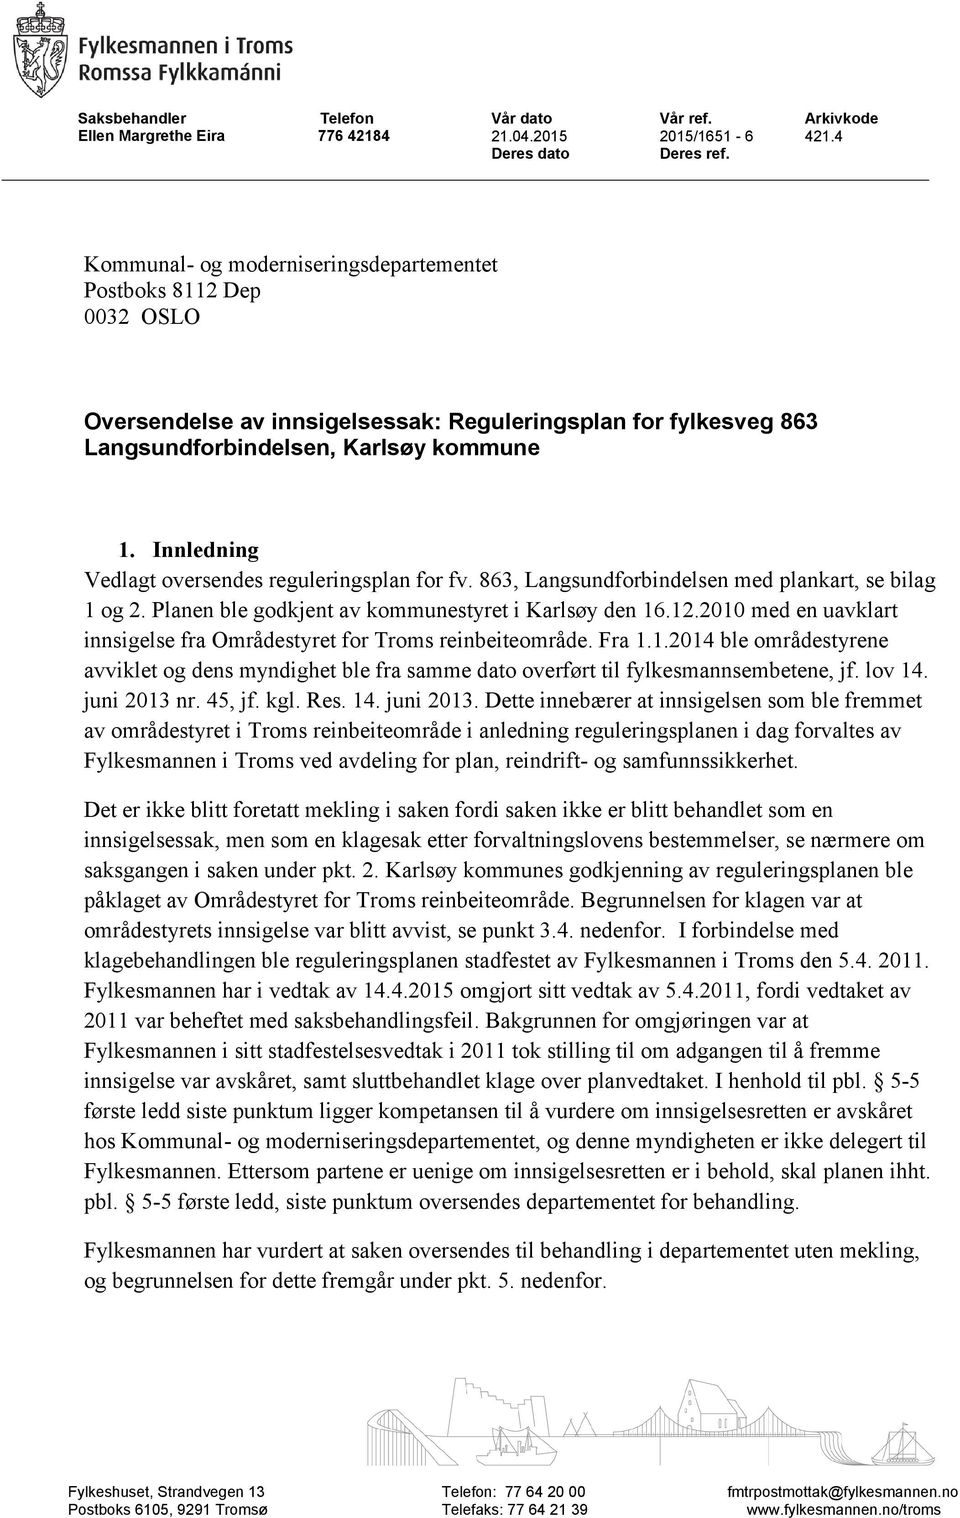 Innledning Vedlagt oversendes reguleringsplan for fv. 863, med plankart, se 1 og 2. Planen ble godkjent av kommunestyret i Karlsøy den 16.12.